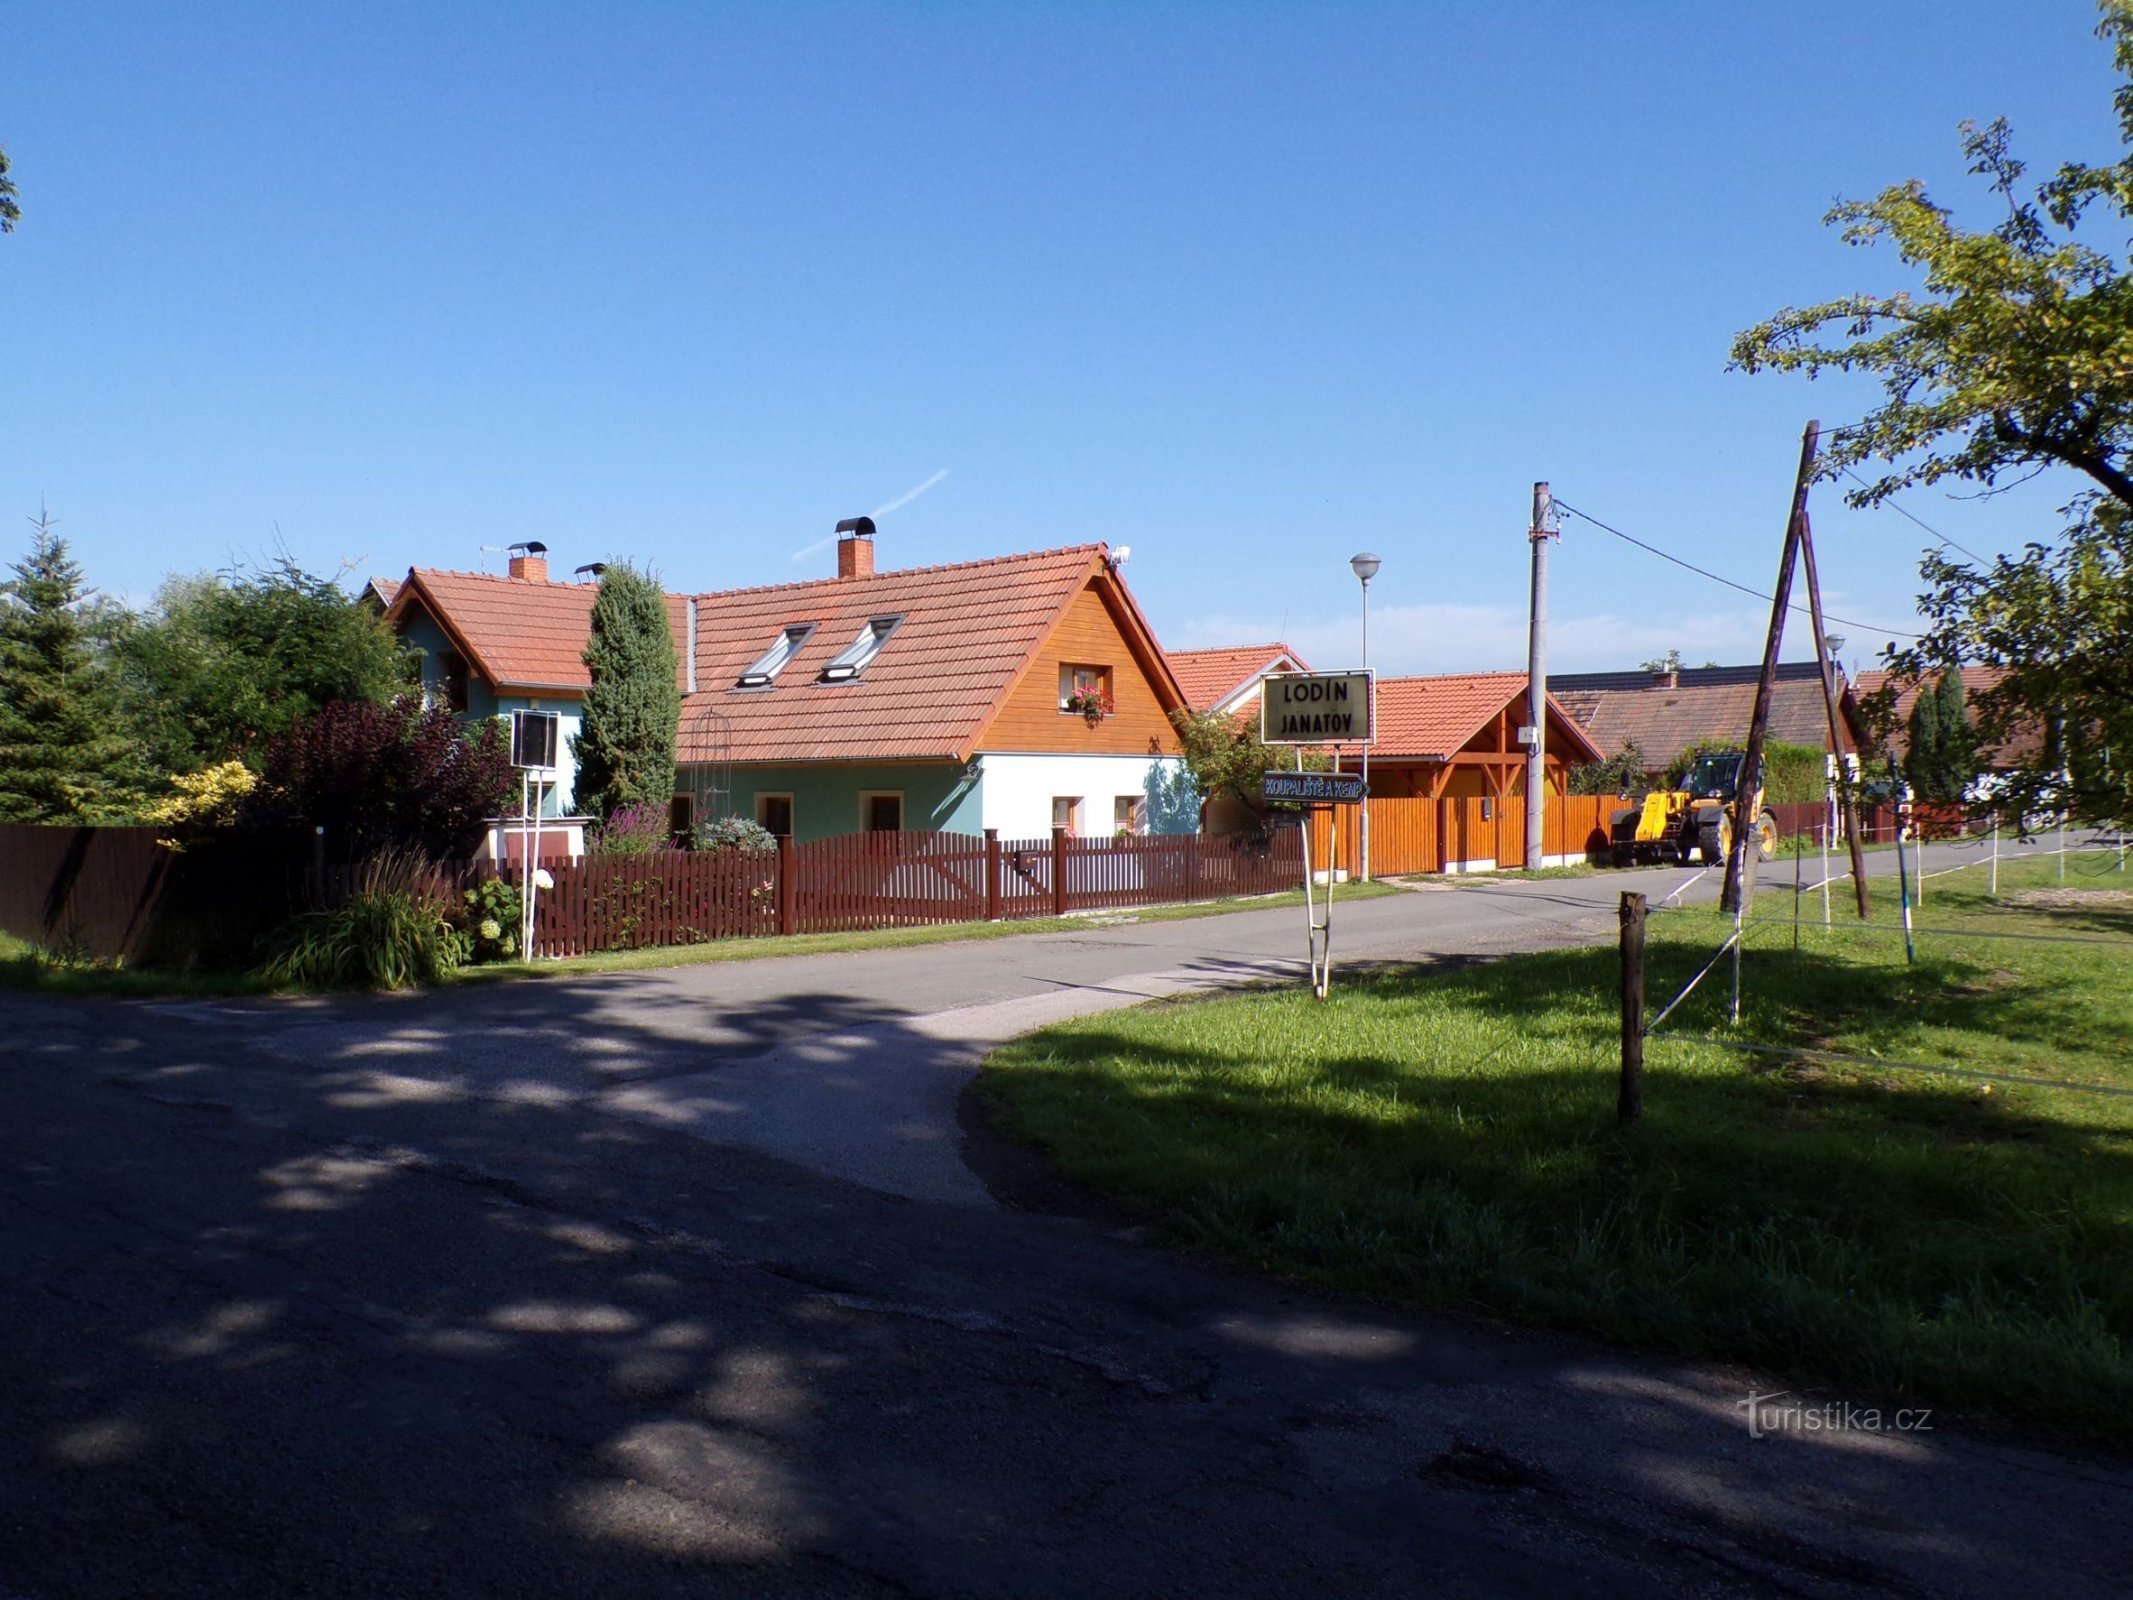 View of Janatov from the main road (15.8.2021/XNUMX/XNUMX)